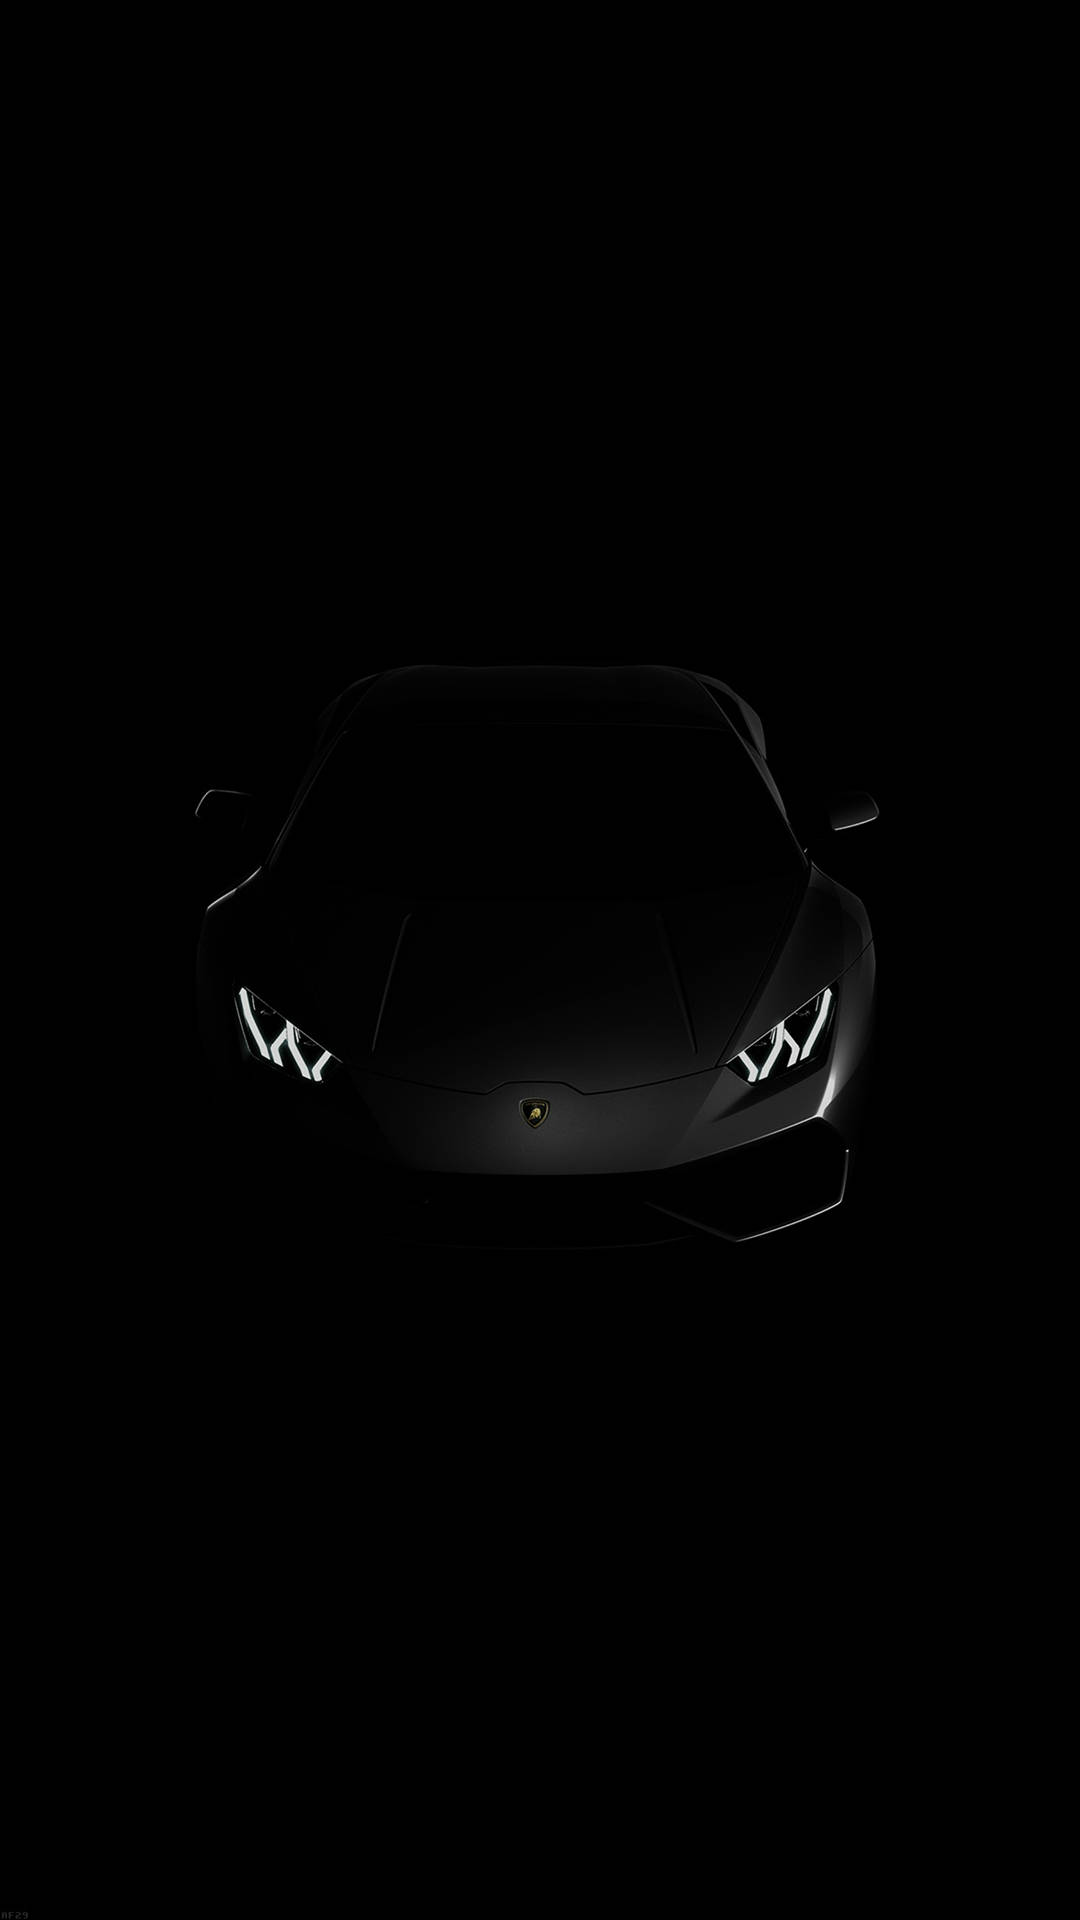 Lamborghini On Black Iphone 6 Plus Wallpaper